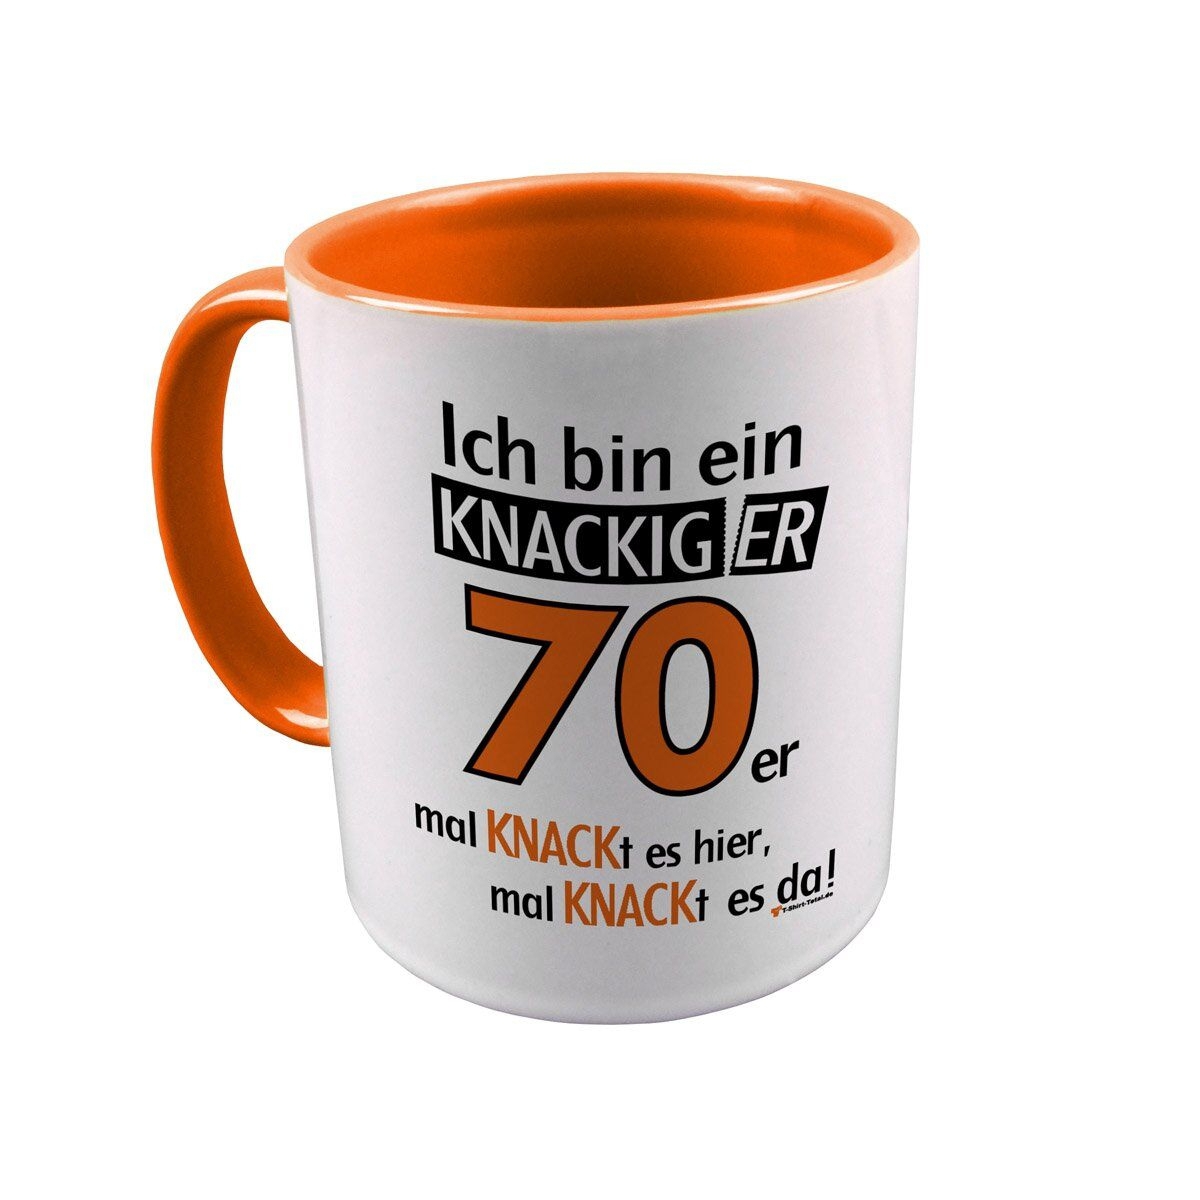 Knackiger 70er Tasse orange / weiß